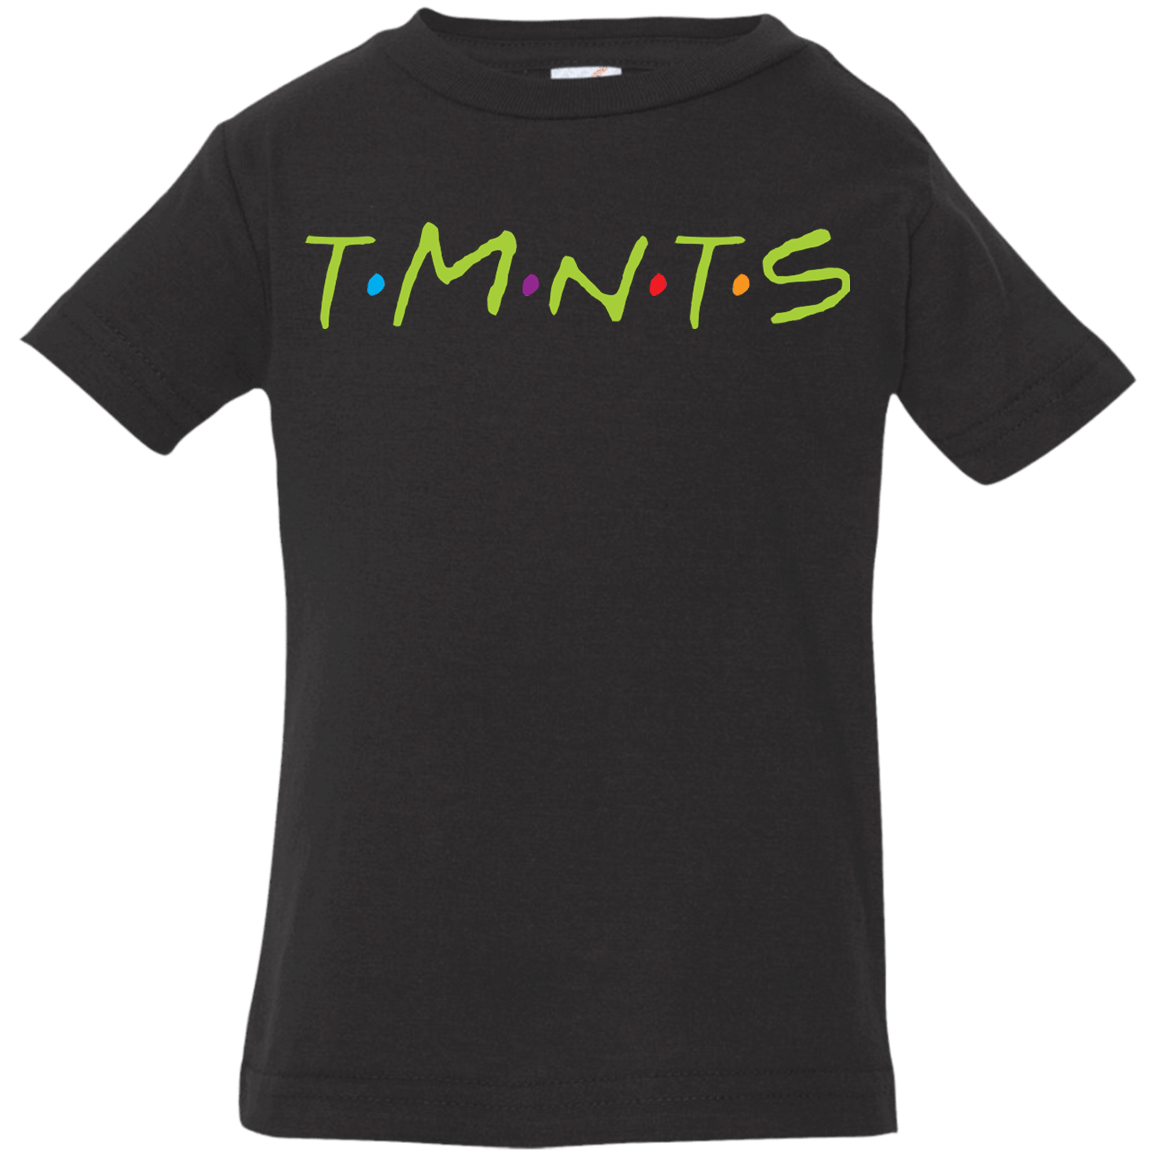 T-Shirts Black / 6 Months TMNTS Infant Premium T-Shirt